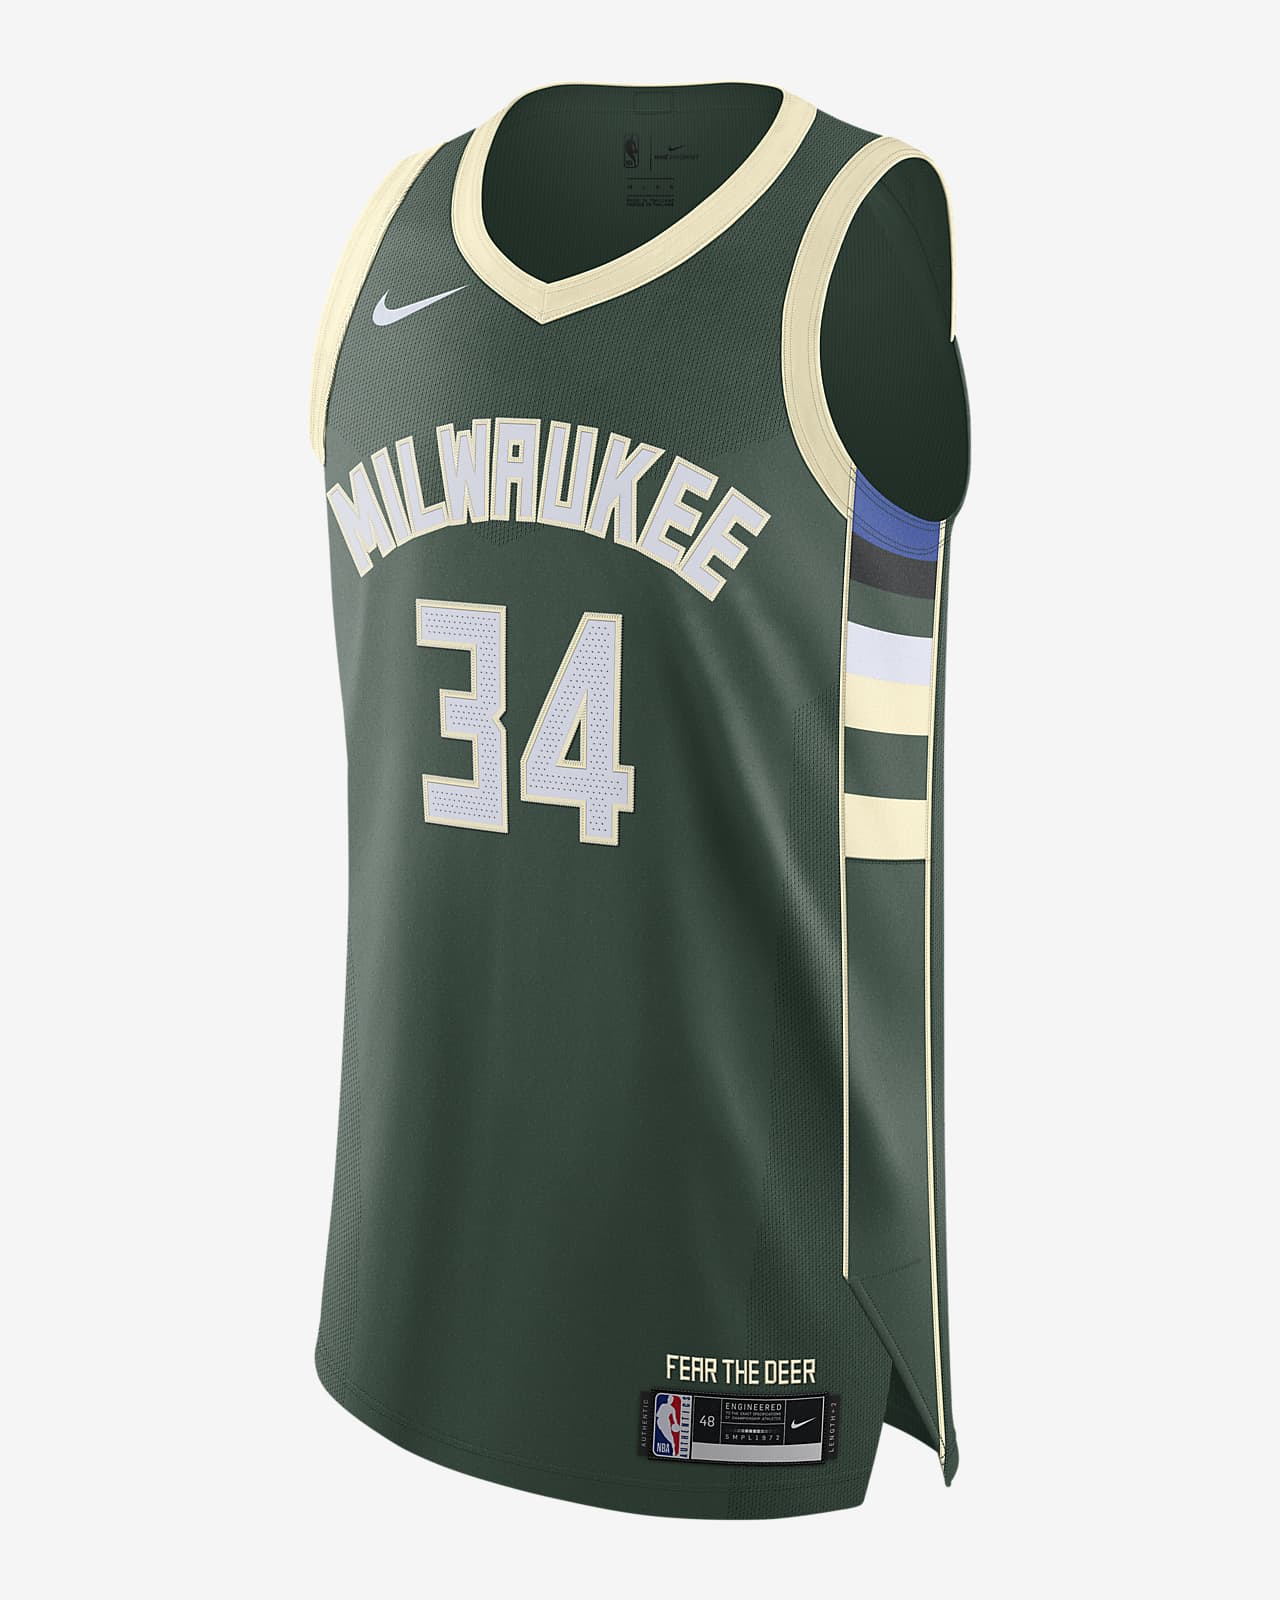 Camisola NBA da Nike Authentic Giannis Antetokounmpo Bucks Icon Edition 2020 para homem